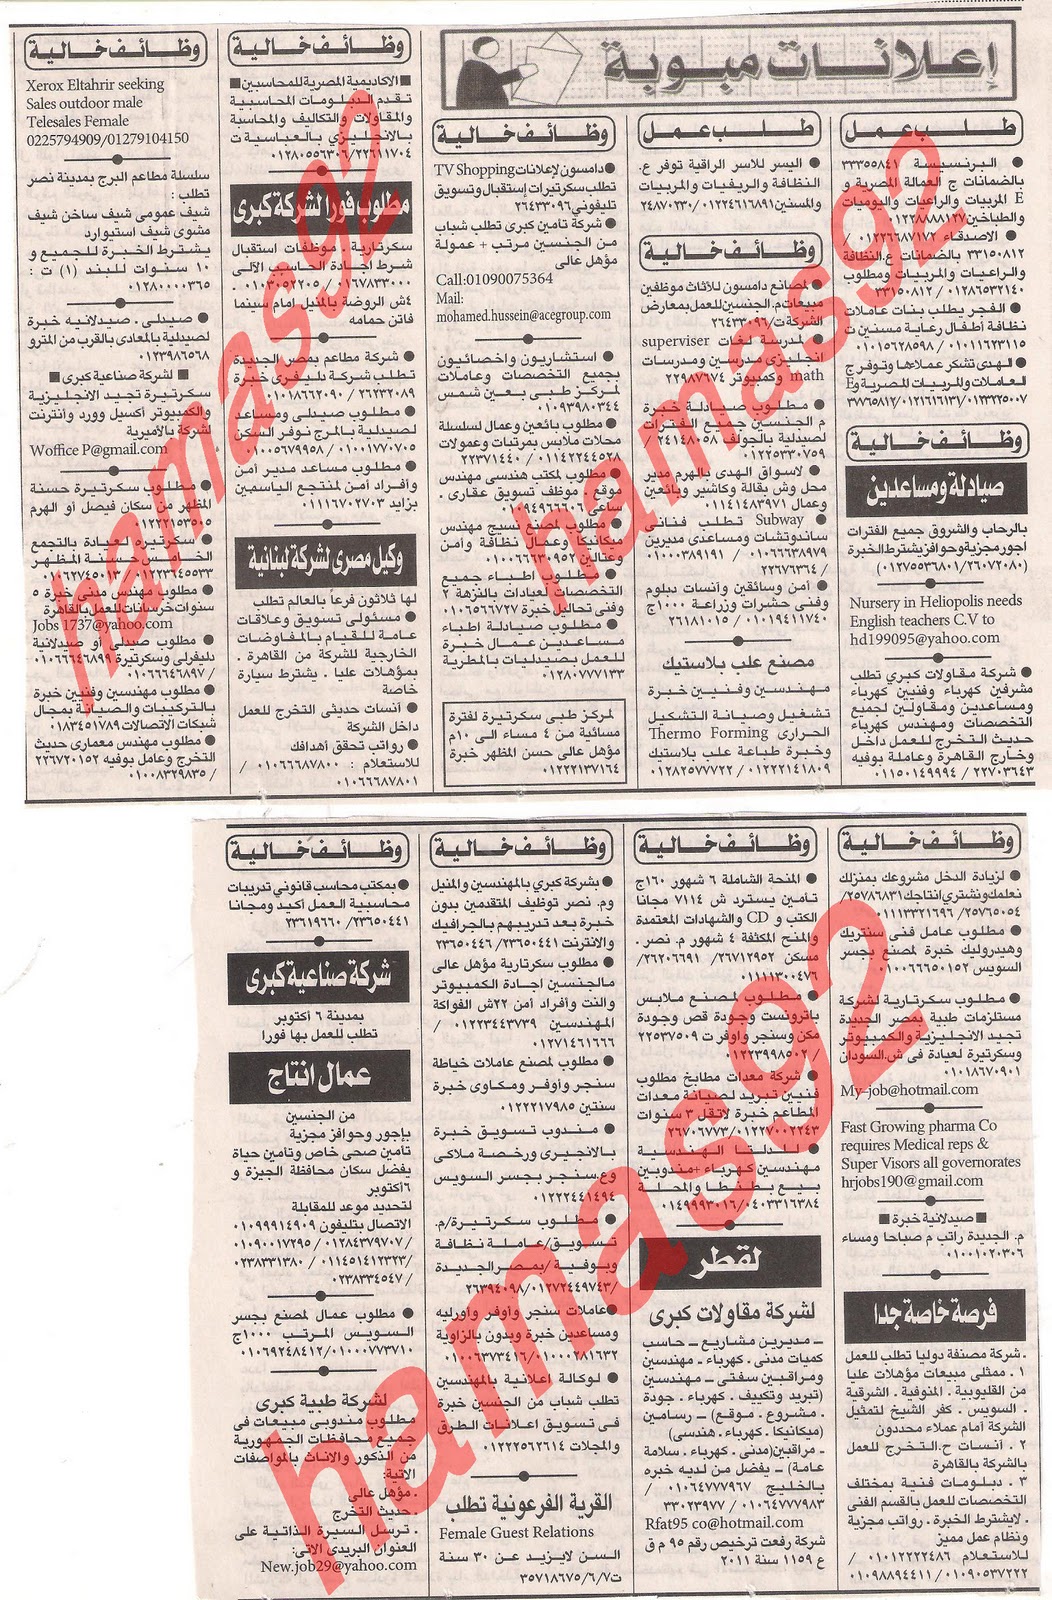 وظائف جريدة الاهرام الجمعة 9  ديسمبر 2011 , الجزء الاول , وظائف اهرام الجمعة 9\12\2011 Picture+003